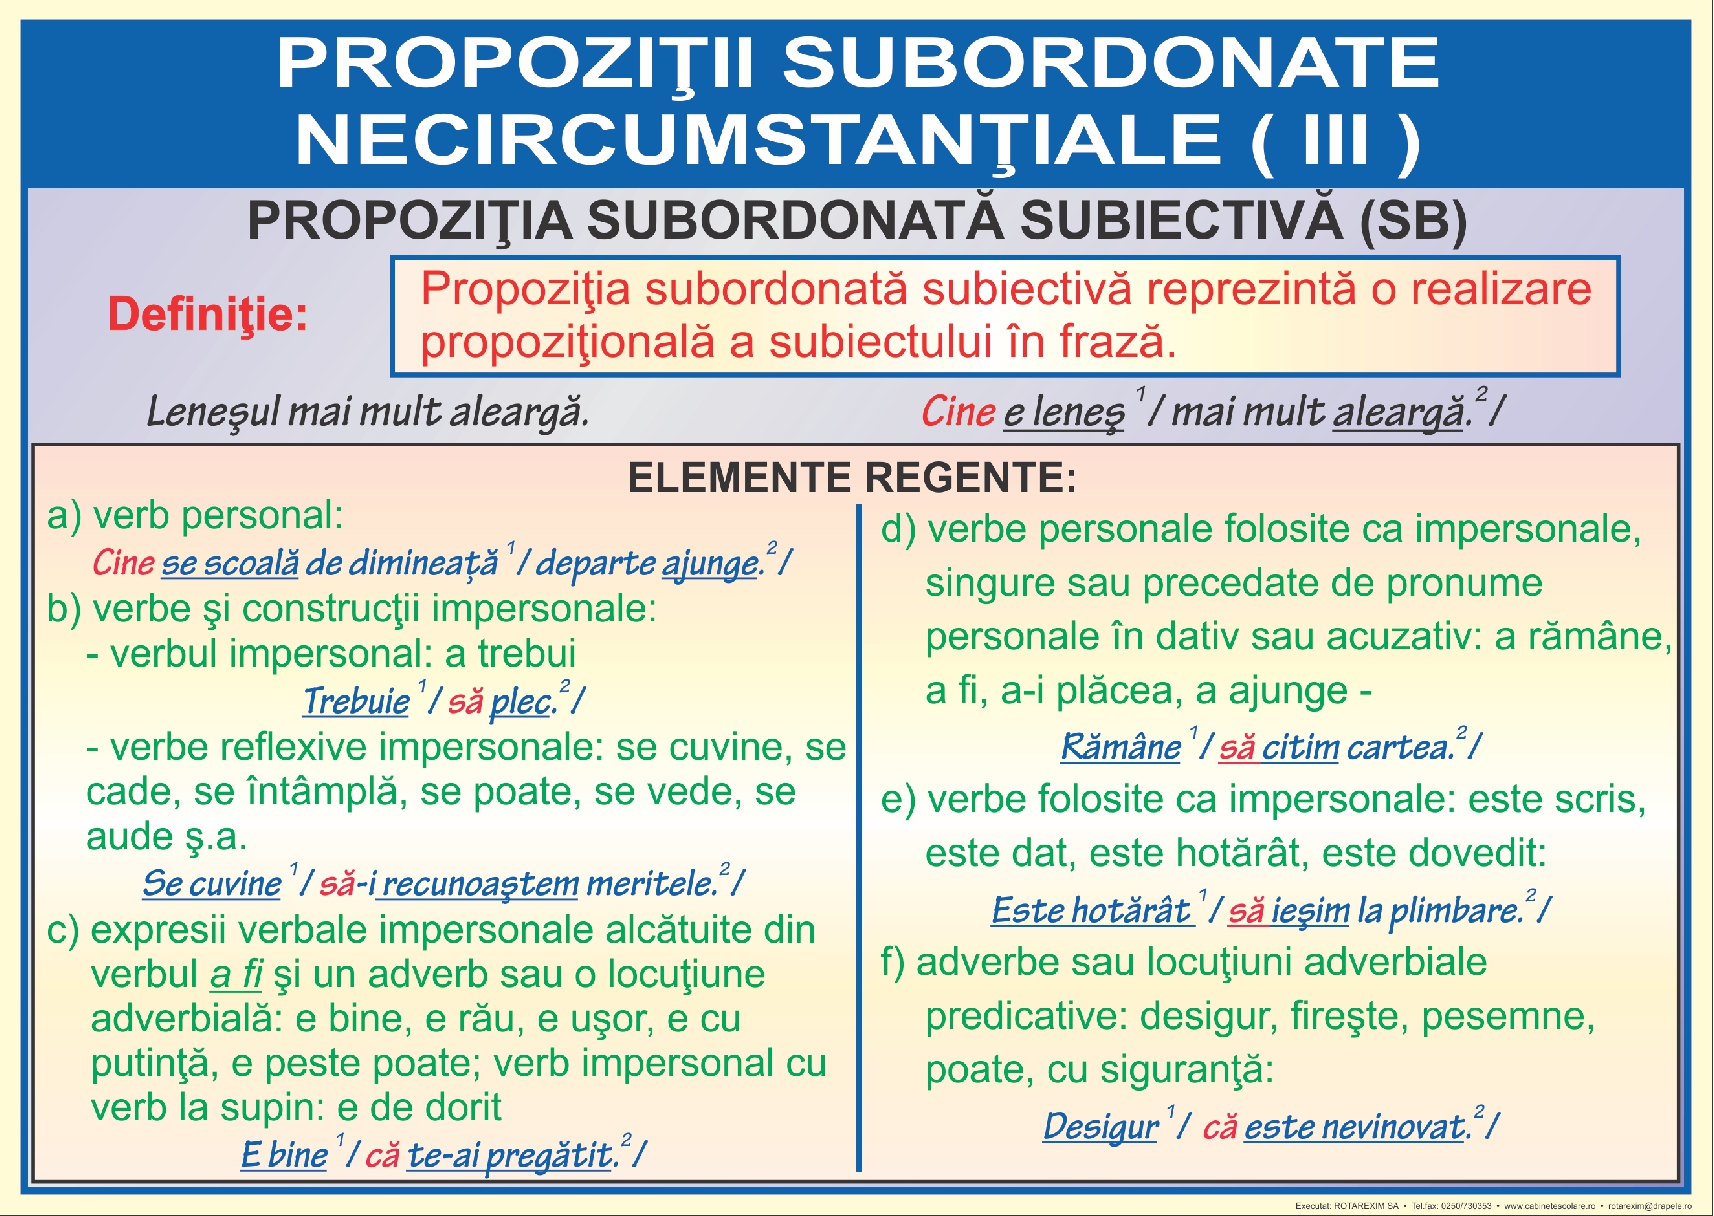 Propozitii subordonate necircumstantiale - III